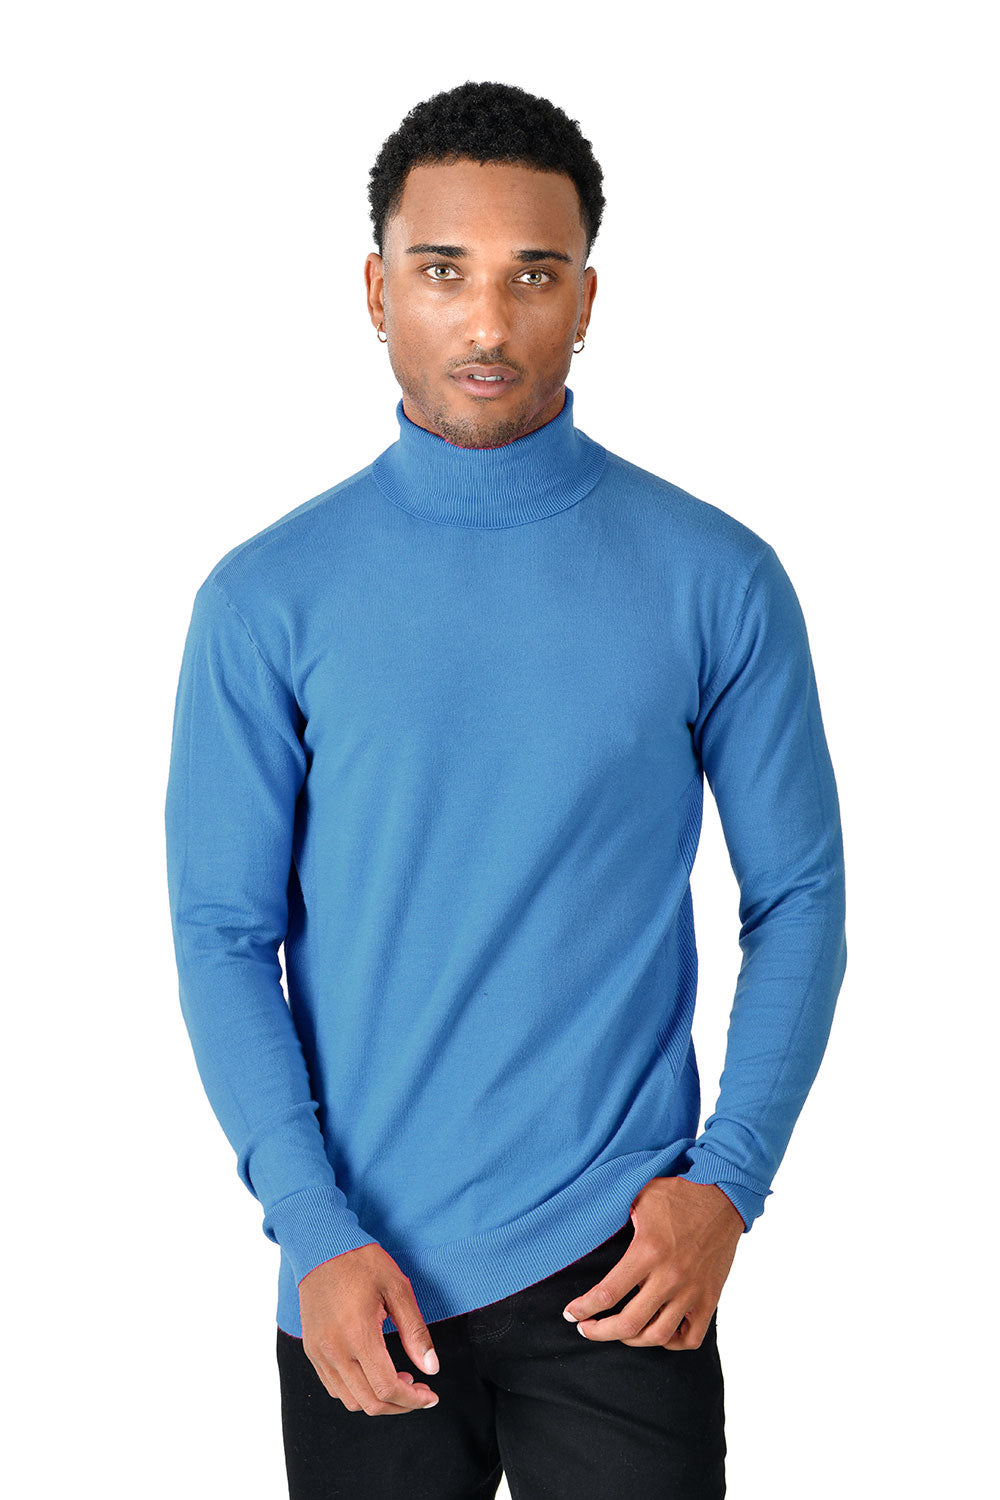 Men's Turtleneck Ribbed Solid Color Basic Sweater LS2100 Blue